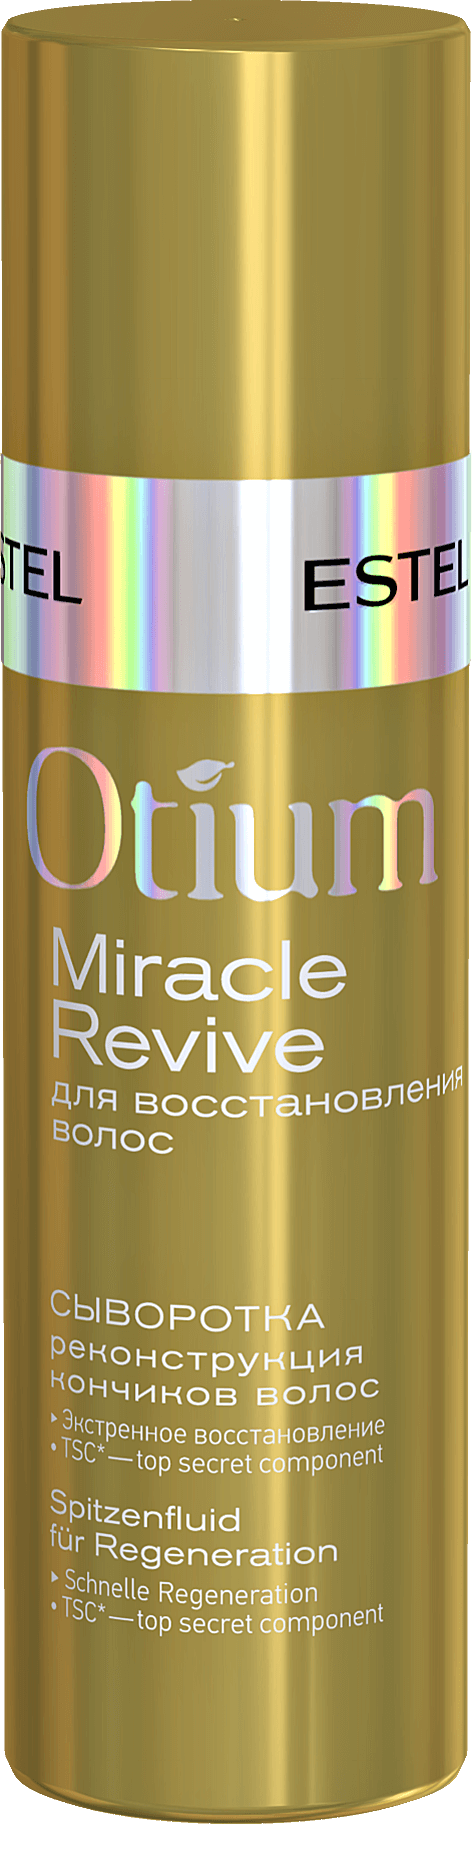 Сыворотка "Реконструкция кончиков волос" OTIUM MIRACLE REVIVE 100 мл. Estel